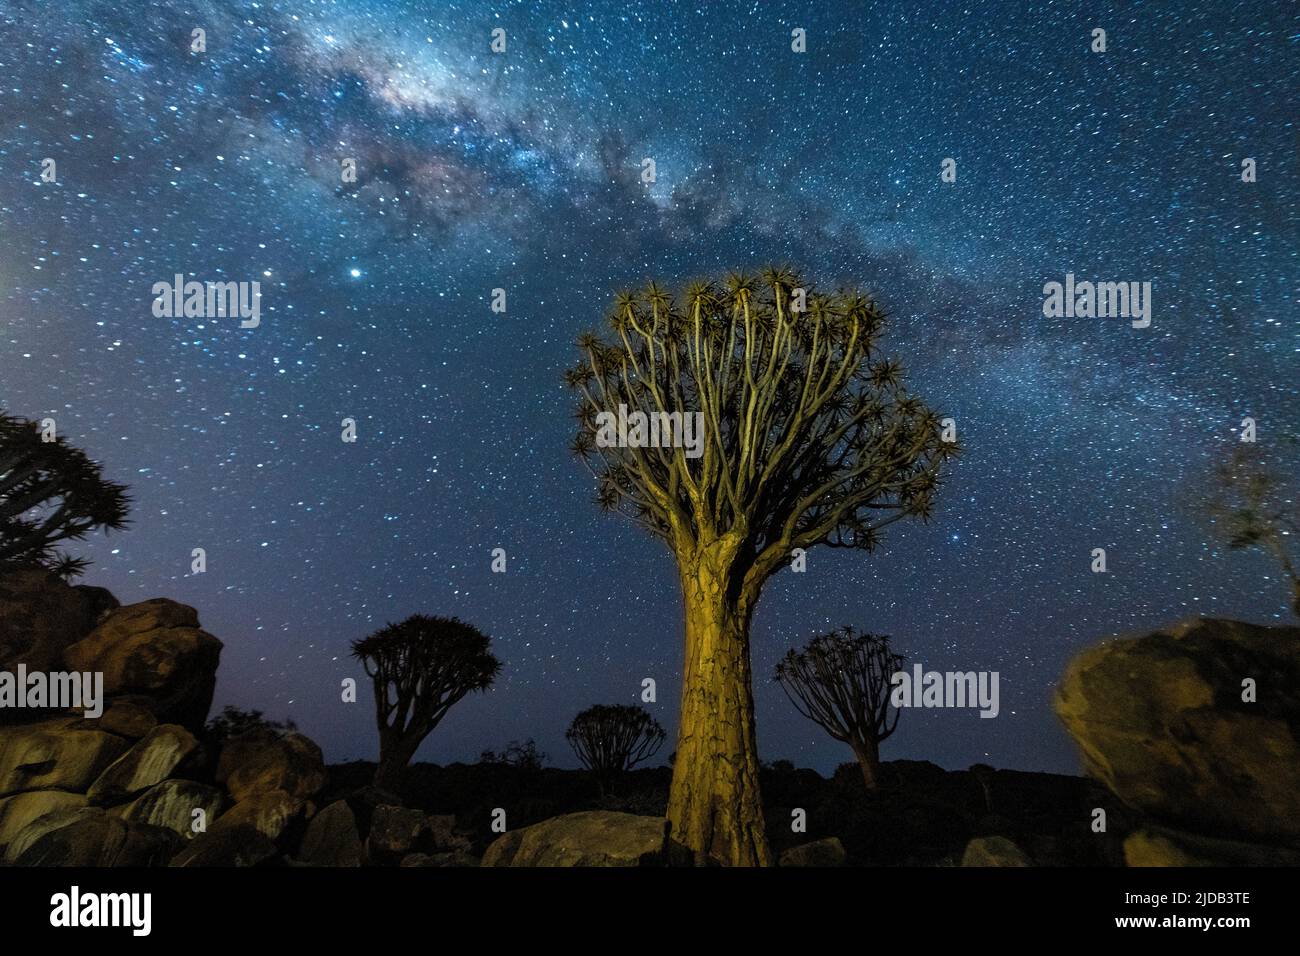 Zitterbäume (Aloidendron dichotomum) und die Milchstraße; Region Kunene, Namibia Stockfoto